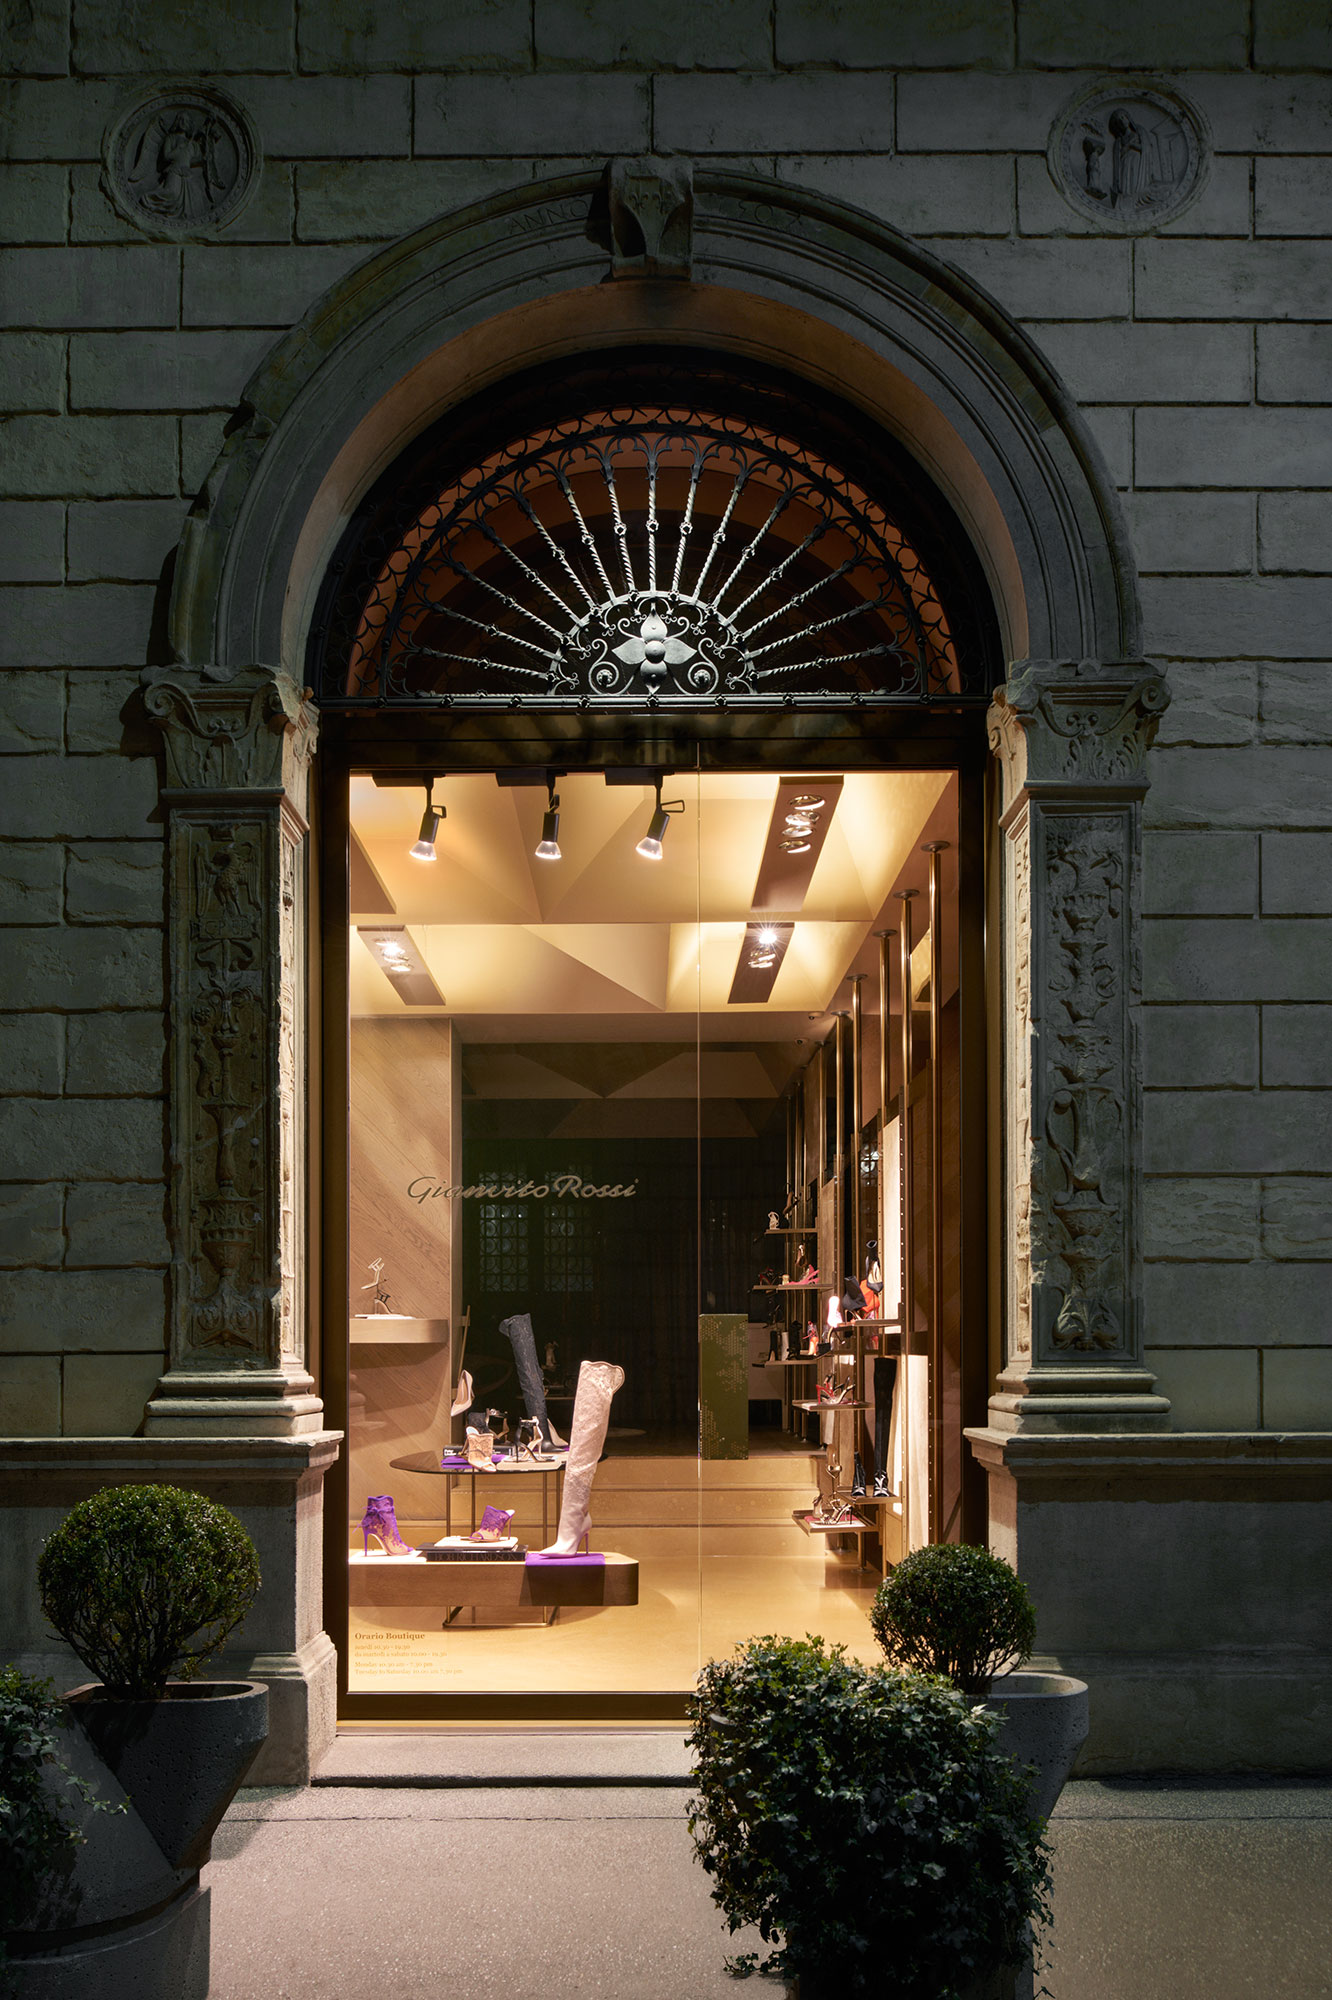 Gianvito Rossi boutique in Milan 2018 | Paola Pansini | gianvito rossi | D la Repubblica | Akiko Hayashida | Numerique Retouch Photo Retouching Studio